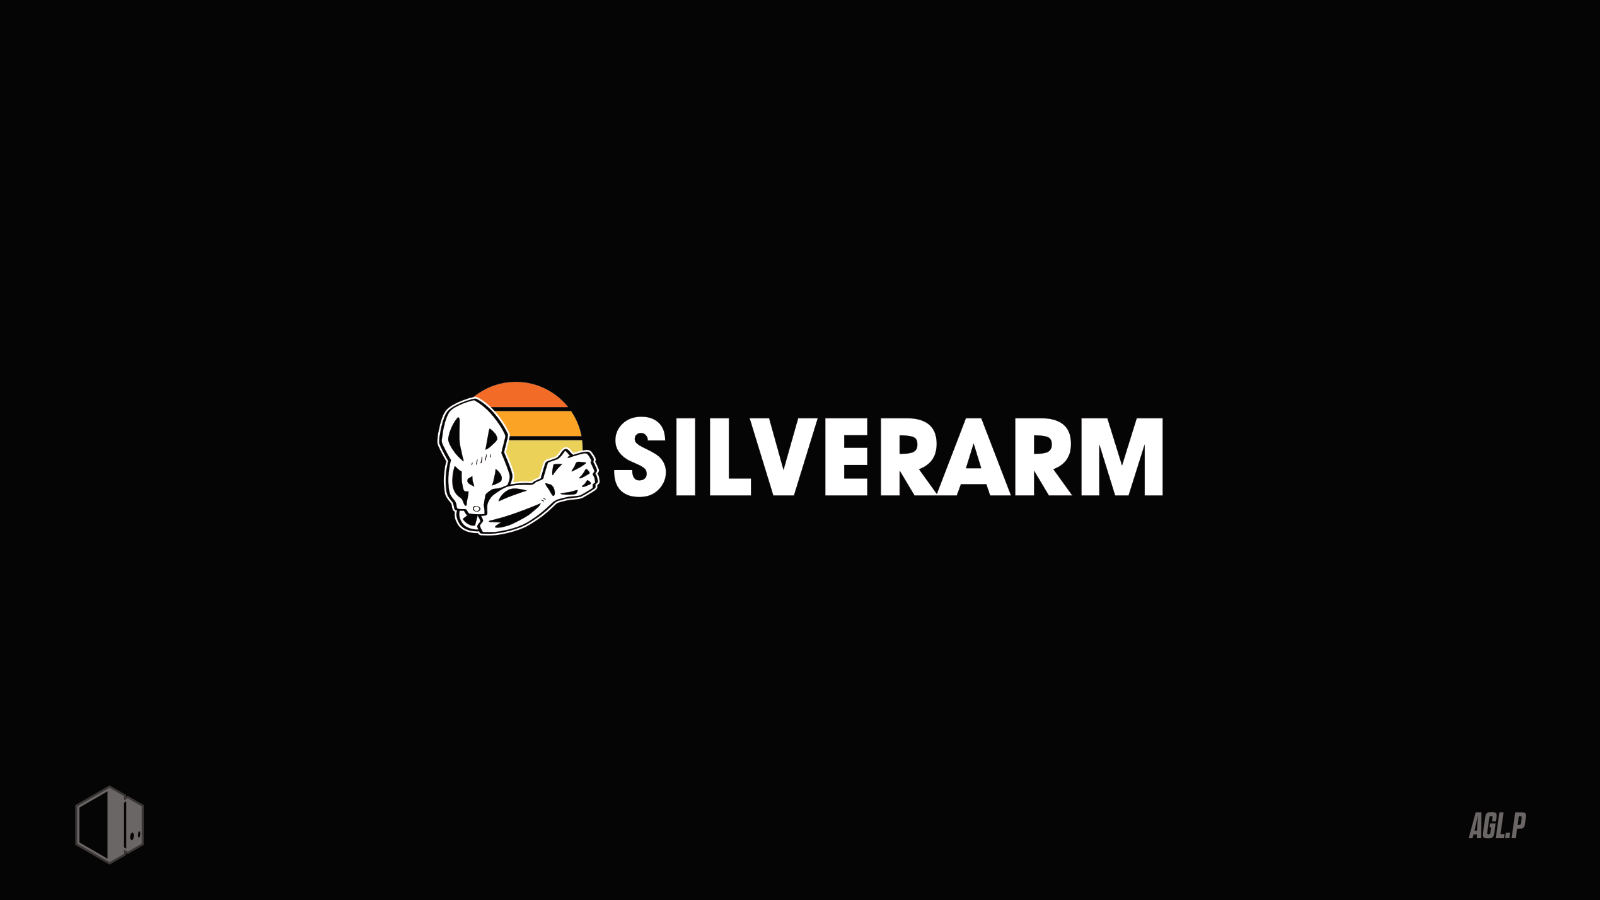 Silverarm | Joel Hines